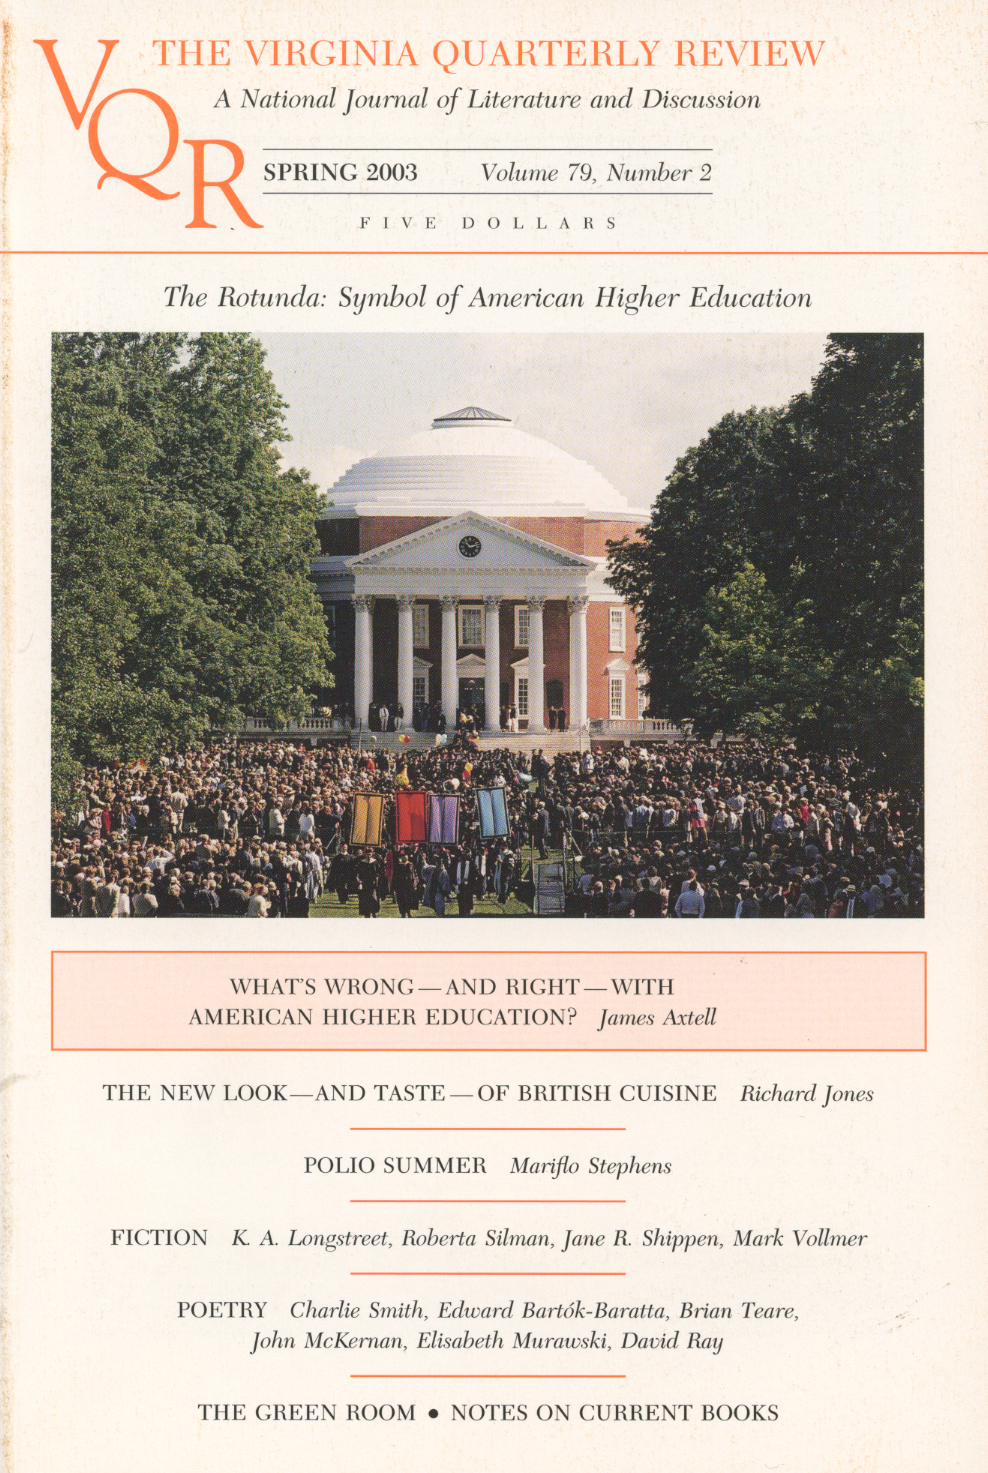 Virginia Quarterly Review, Spring 2003 cover